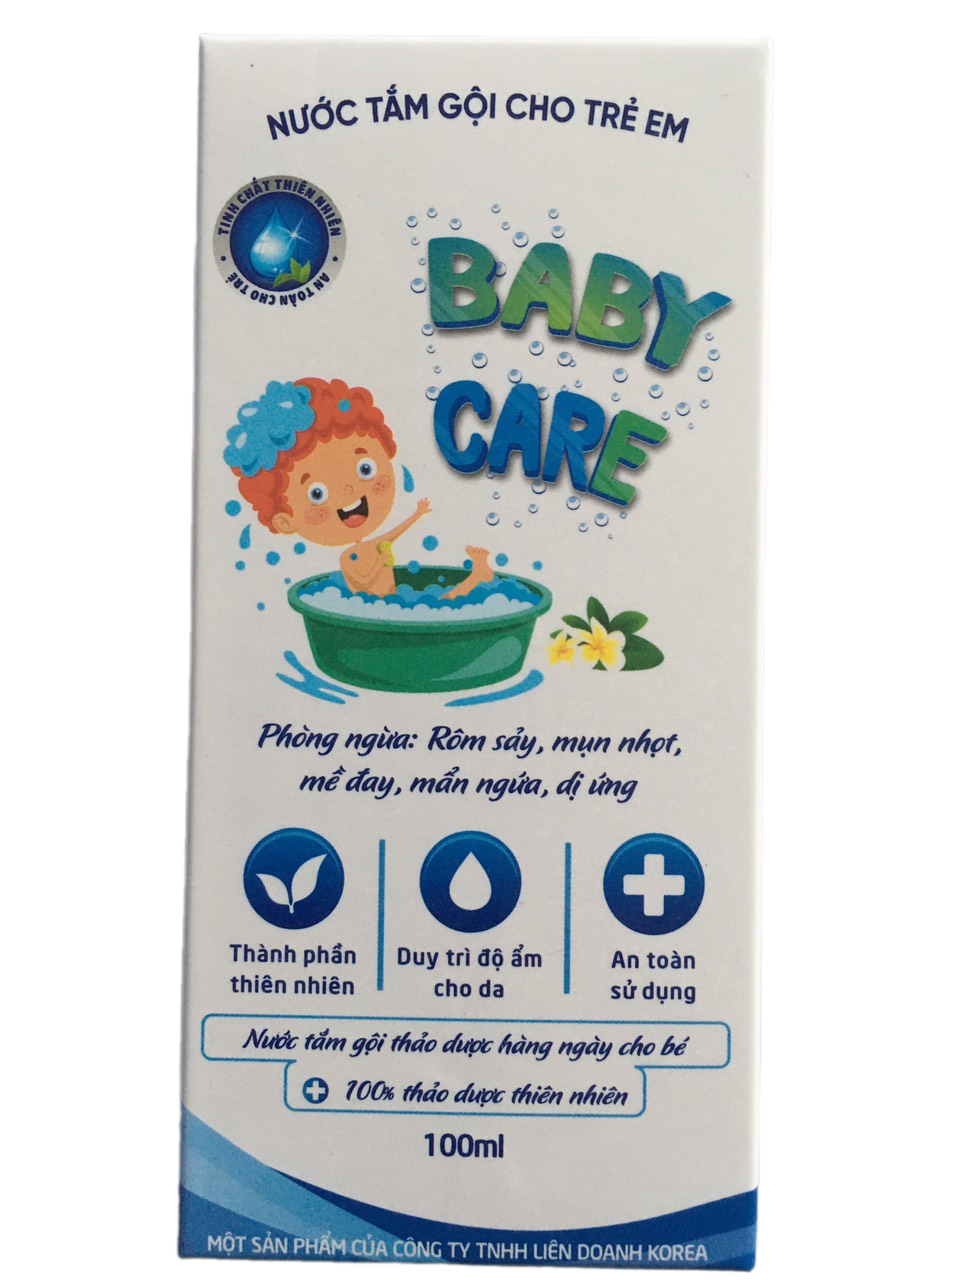 Nước tắm gội thảo dược cho trẻ em phòng ngừa rôm sảy, viêm da, hăm da, mụn